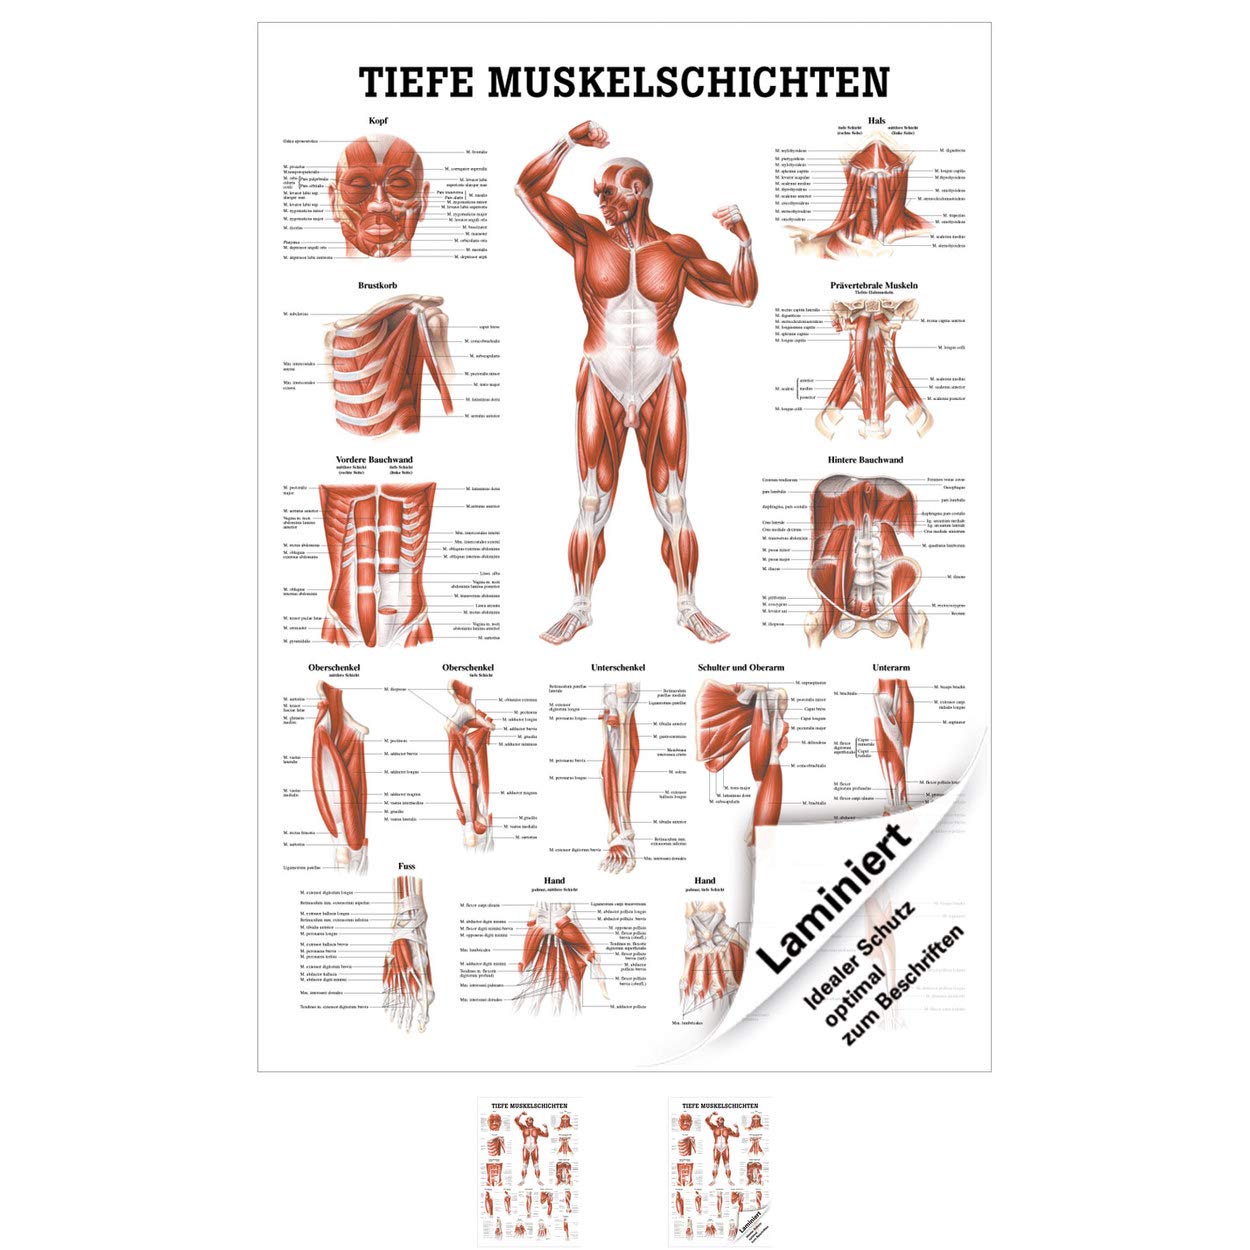 Rüdiger Tiefe Muskelschichten-Brust Lehrtafel Anatomie 100x70 cm medizinische Lehrmittel